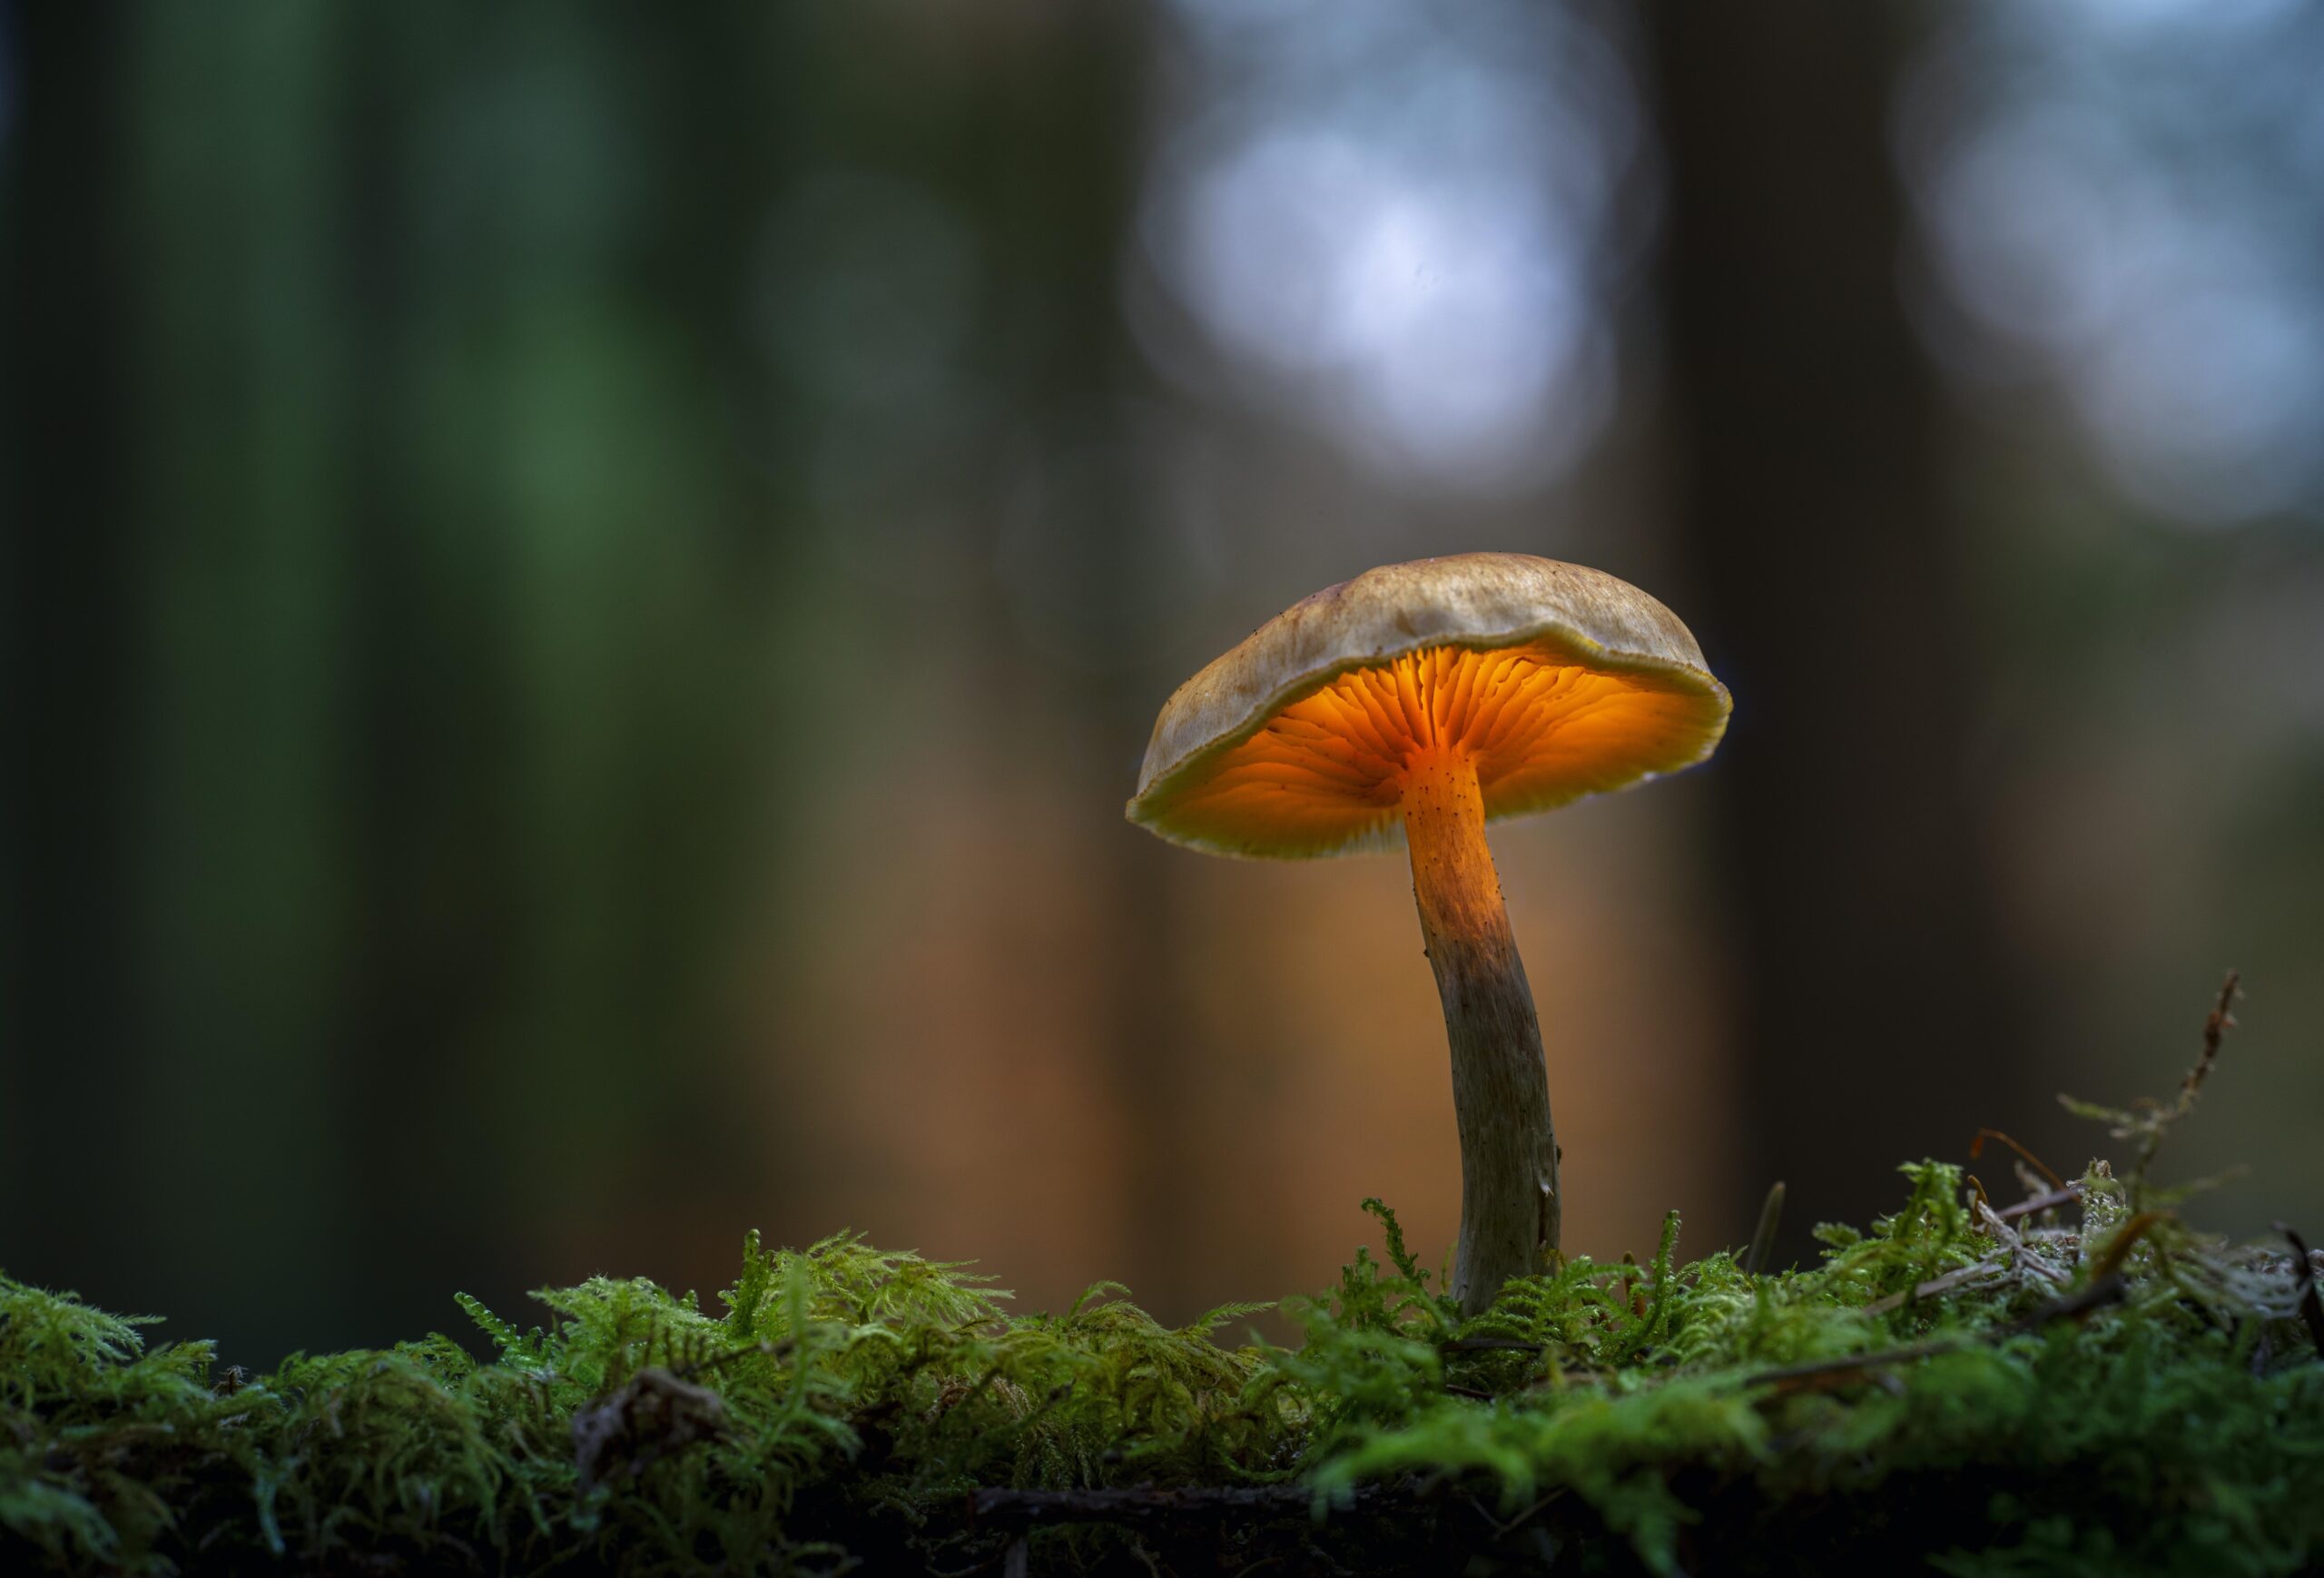 Close-up of mushroom growing